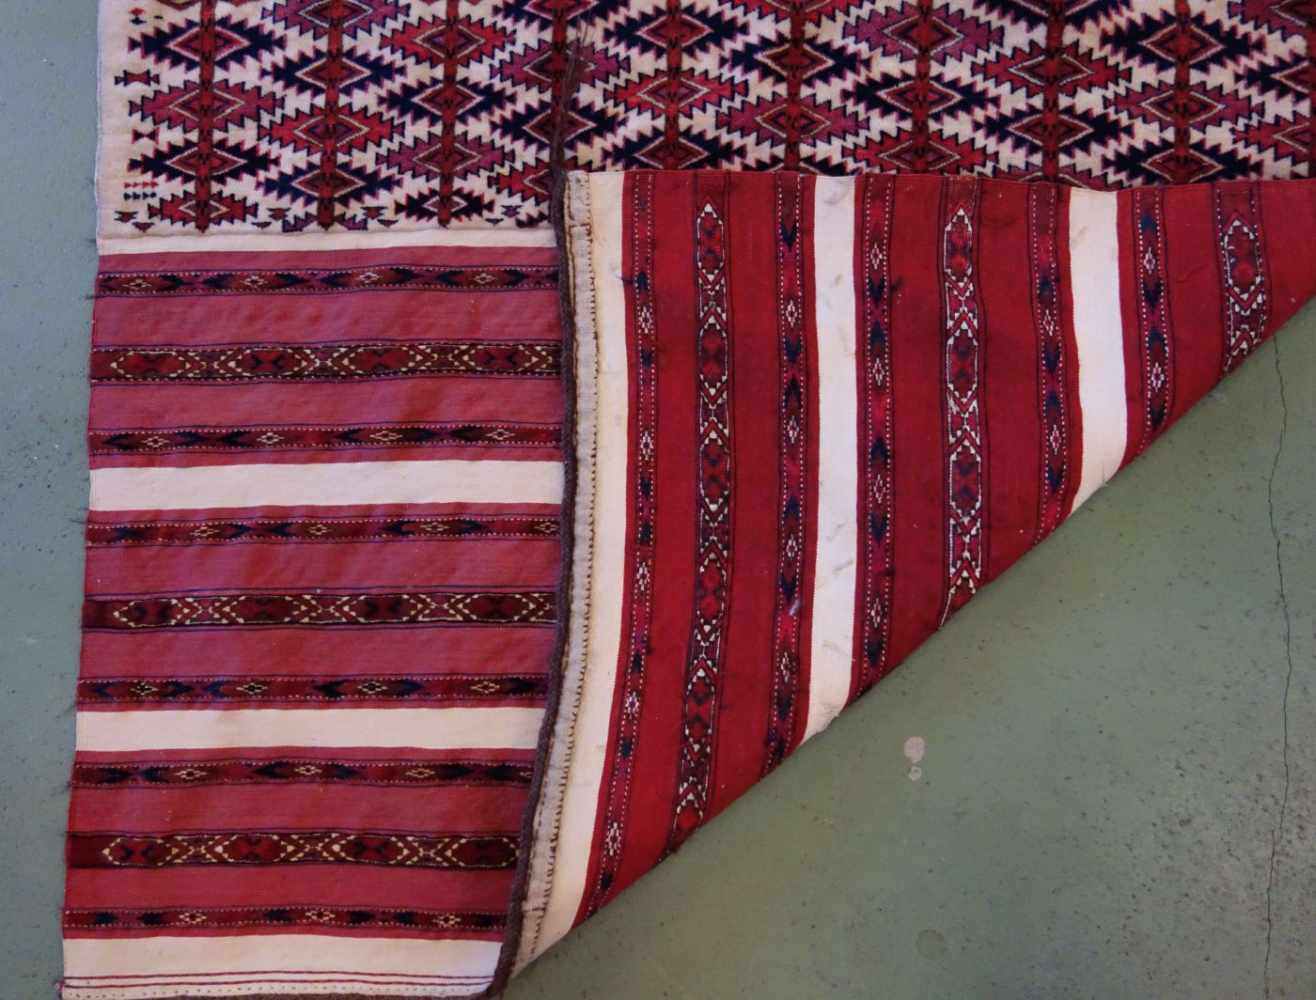 TEKKE AK-TSCHOWAL / TEPPICH / carpet, Turkmenistan, wohl 2. H. 19. Jh., Wechsel von Flor und - Bild 3 aus 18